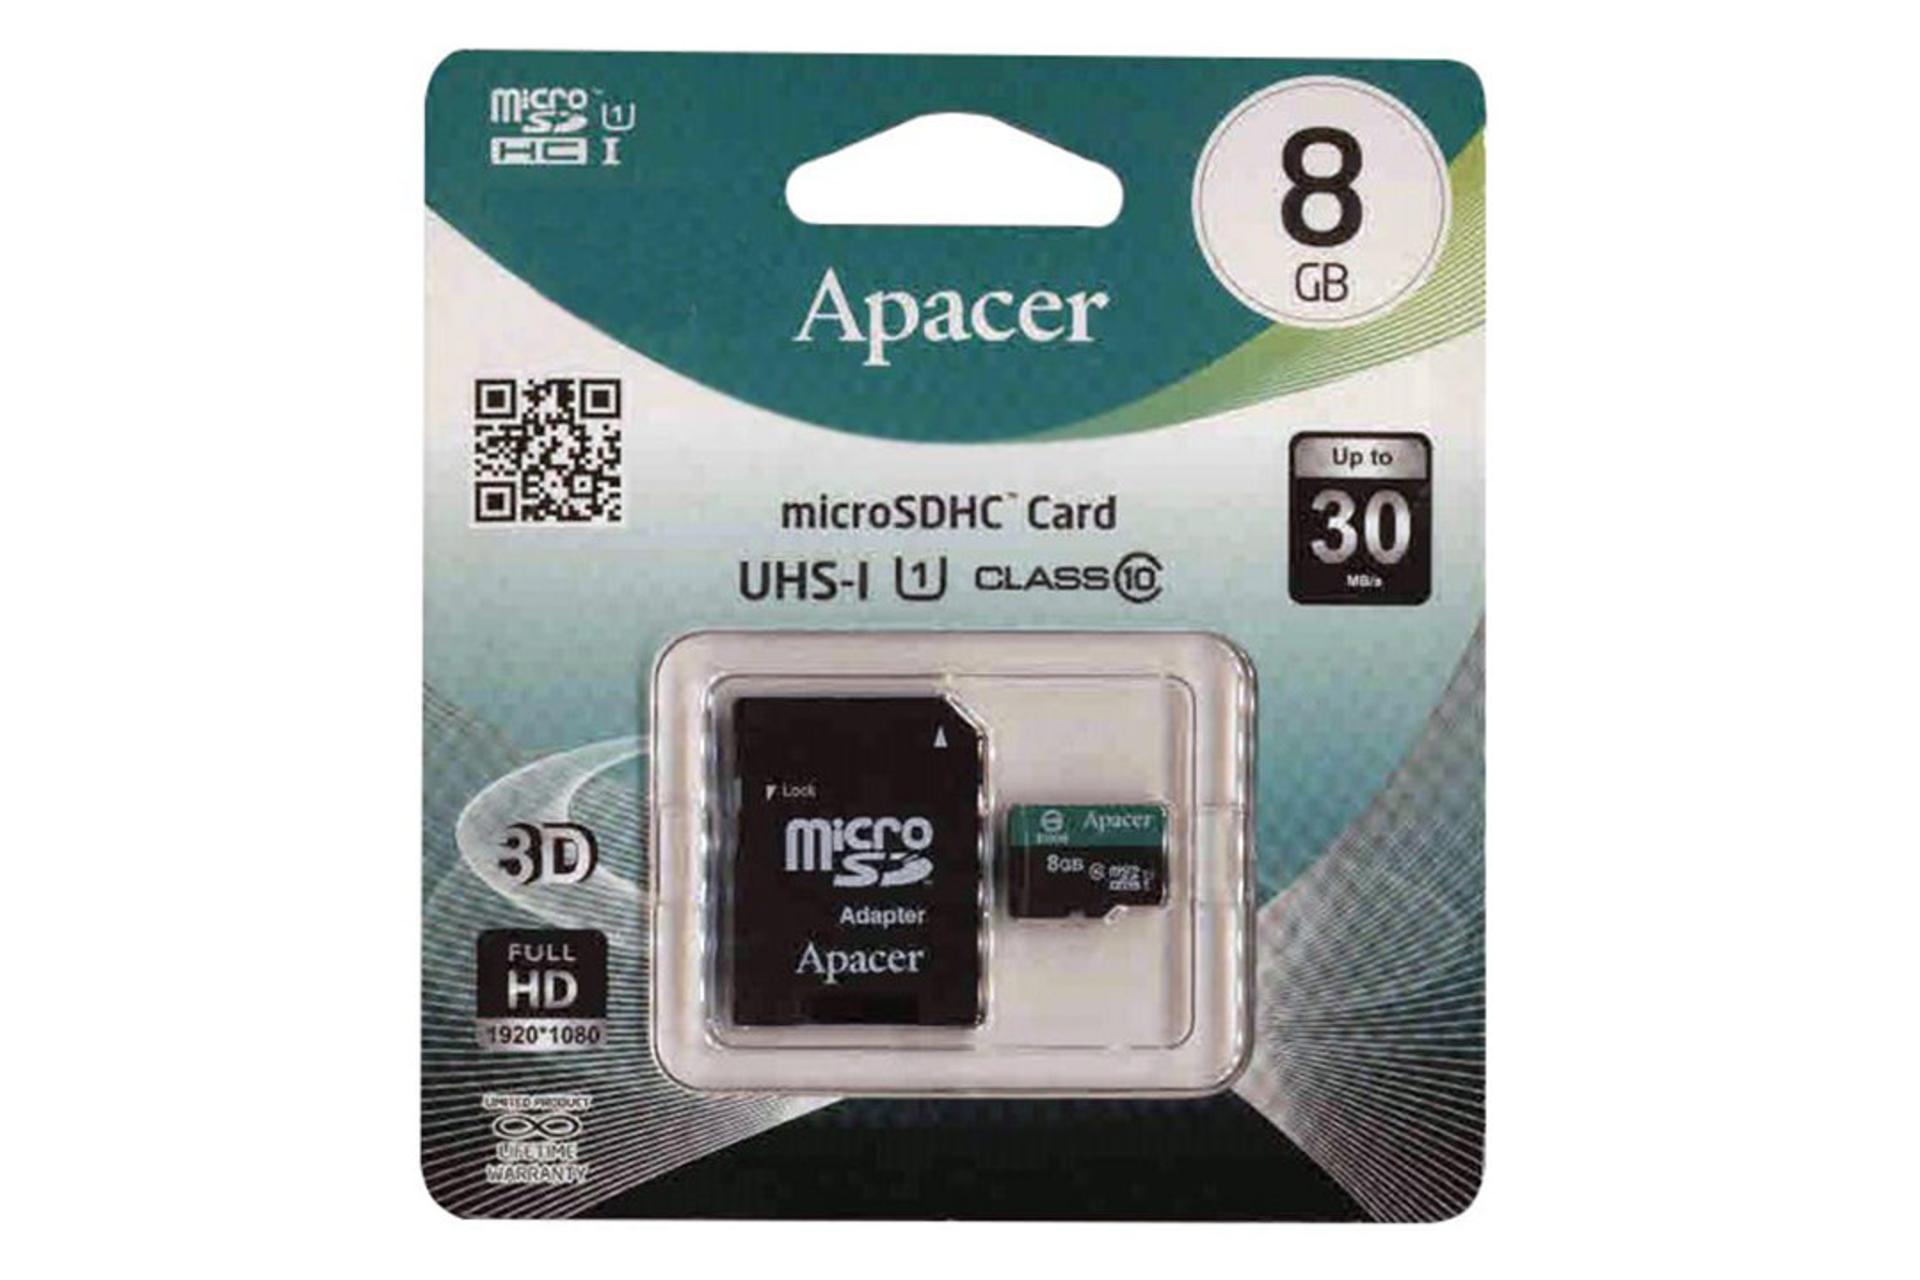 Apacer microSDHC Class 10 UHS-I U1 8GB